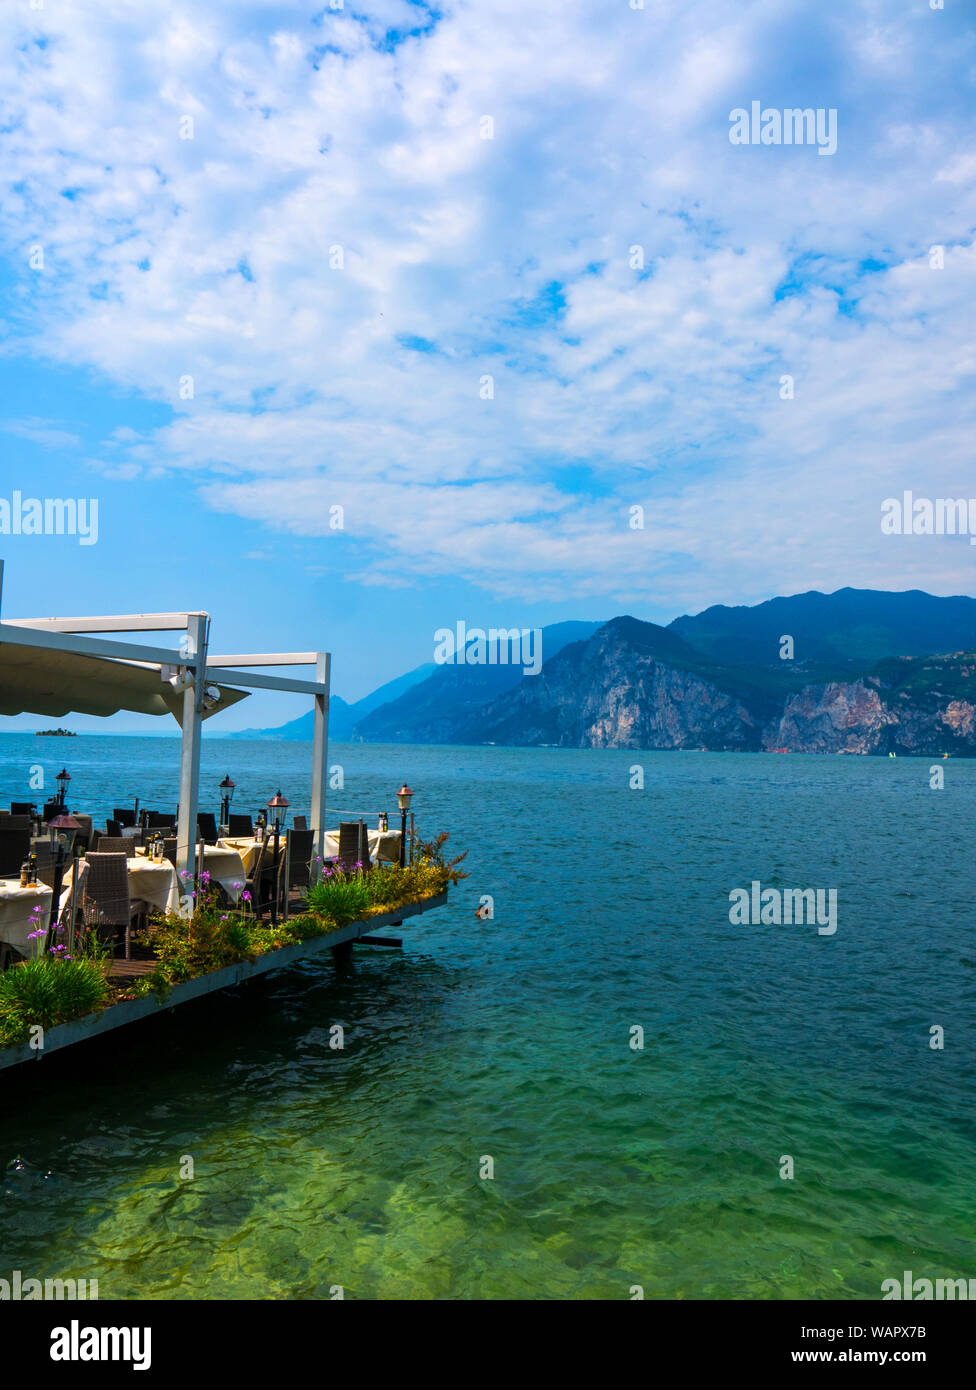 Malcesine ist eine der schönen Städte am Gardasee in Norditalien mit einem Scalieri schloss die Bewachung der Stadt. Es ist ein beliebtes Ziel für Touristen Stockfoto